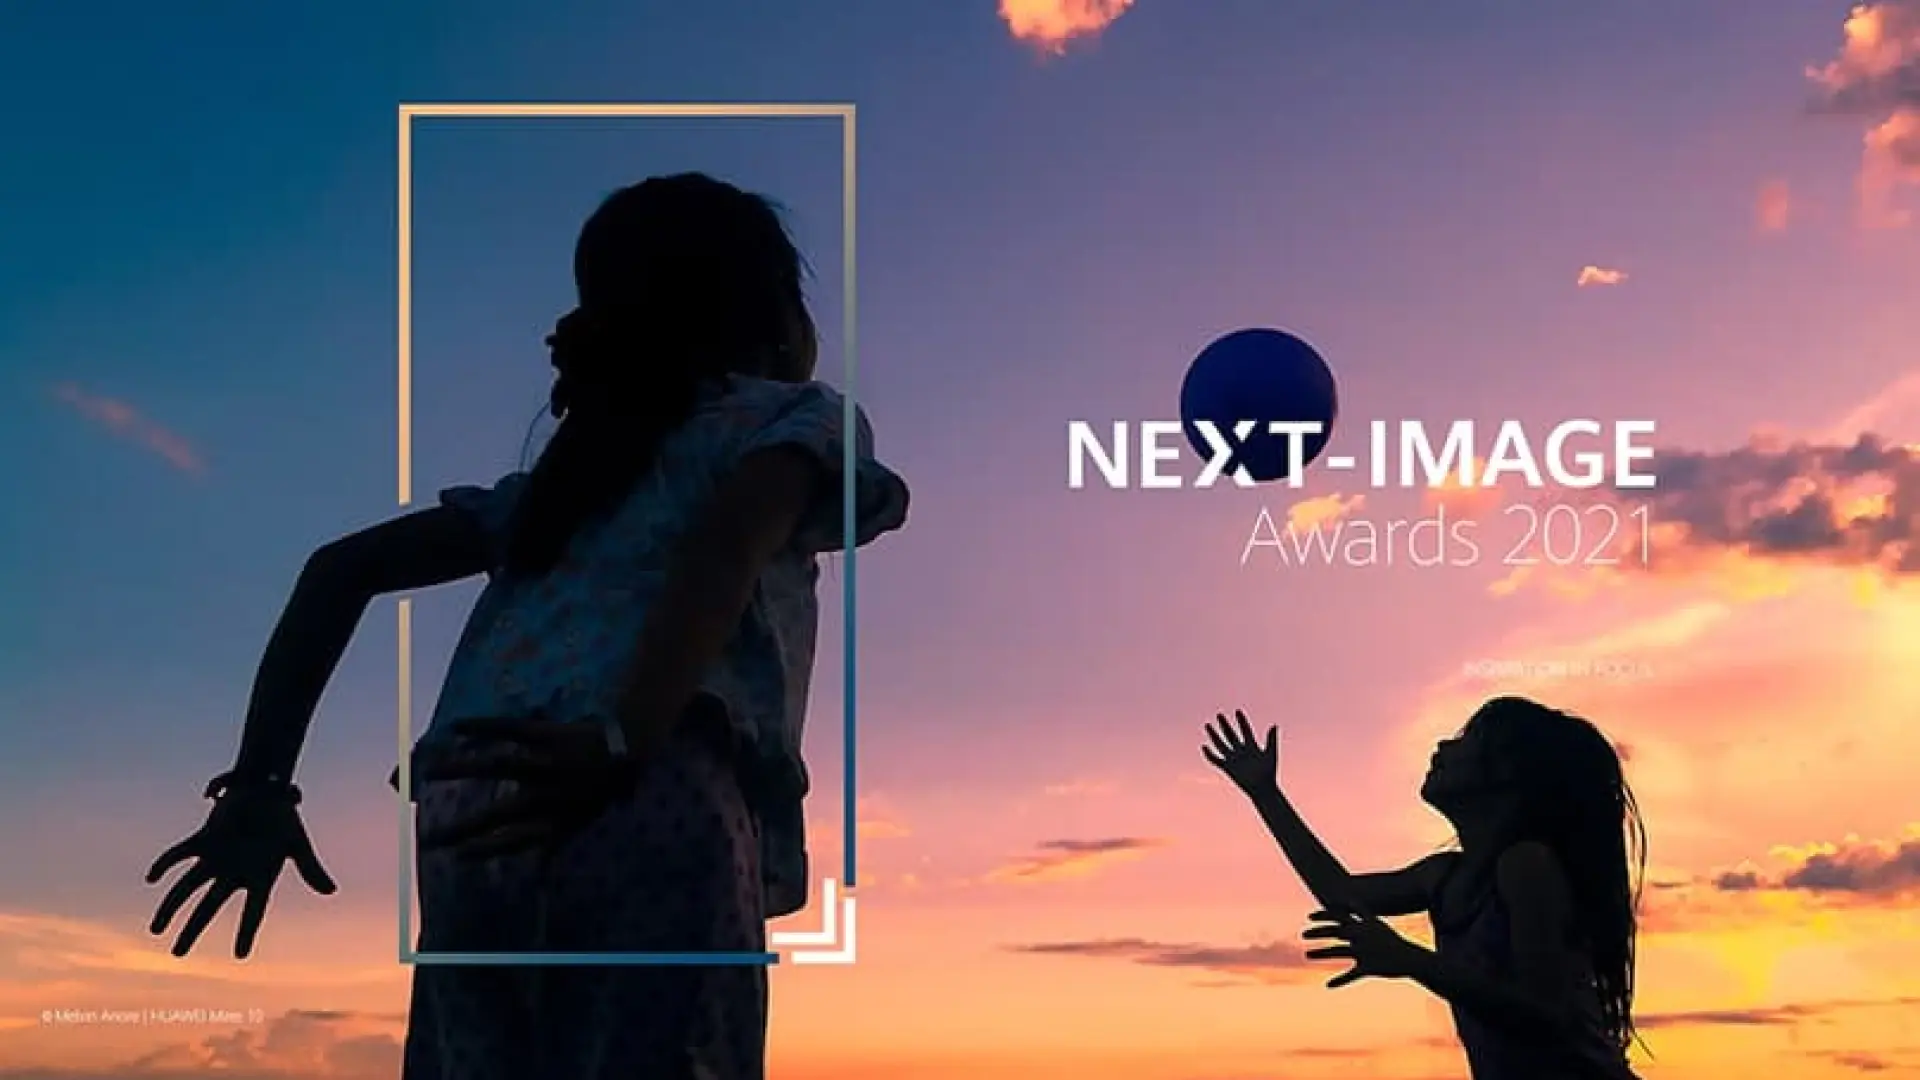 Huawei kompaniyasidan bosh sovrin $10,000 ni tashkil qiluvchi NEXT-IMAGE Awards fototanlovi 